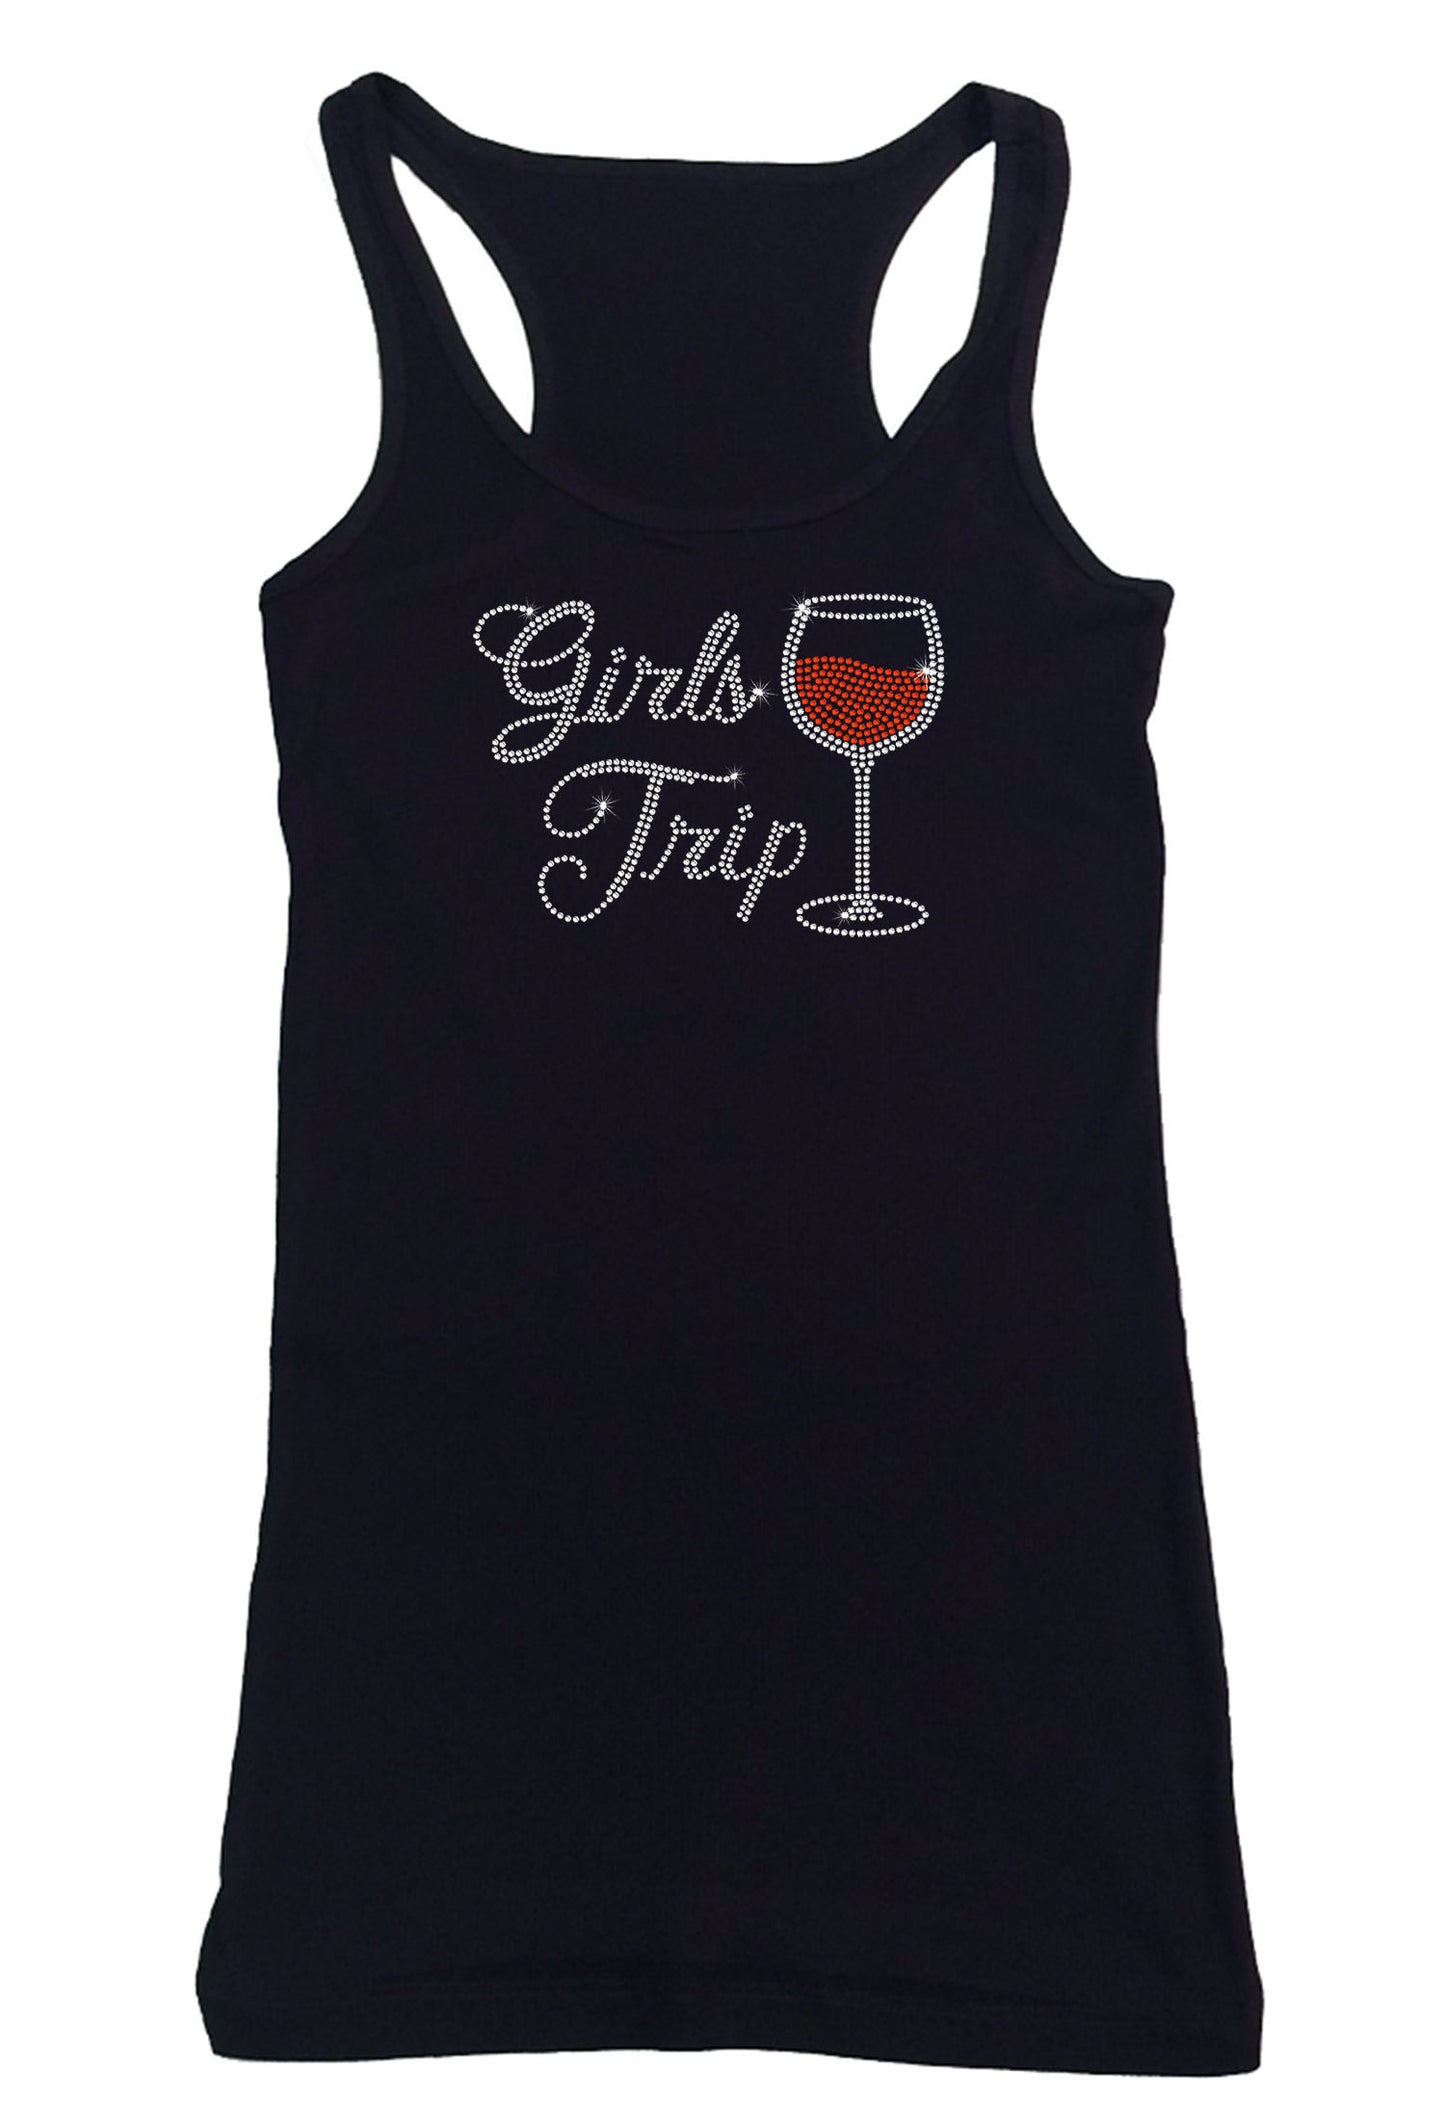 Womens T-shirt with Girls Trip Wine Glass in Rhinestones